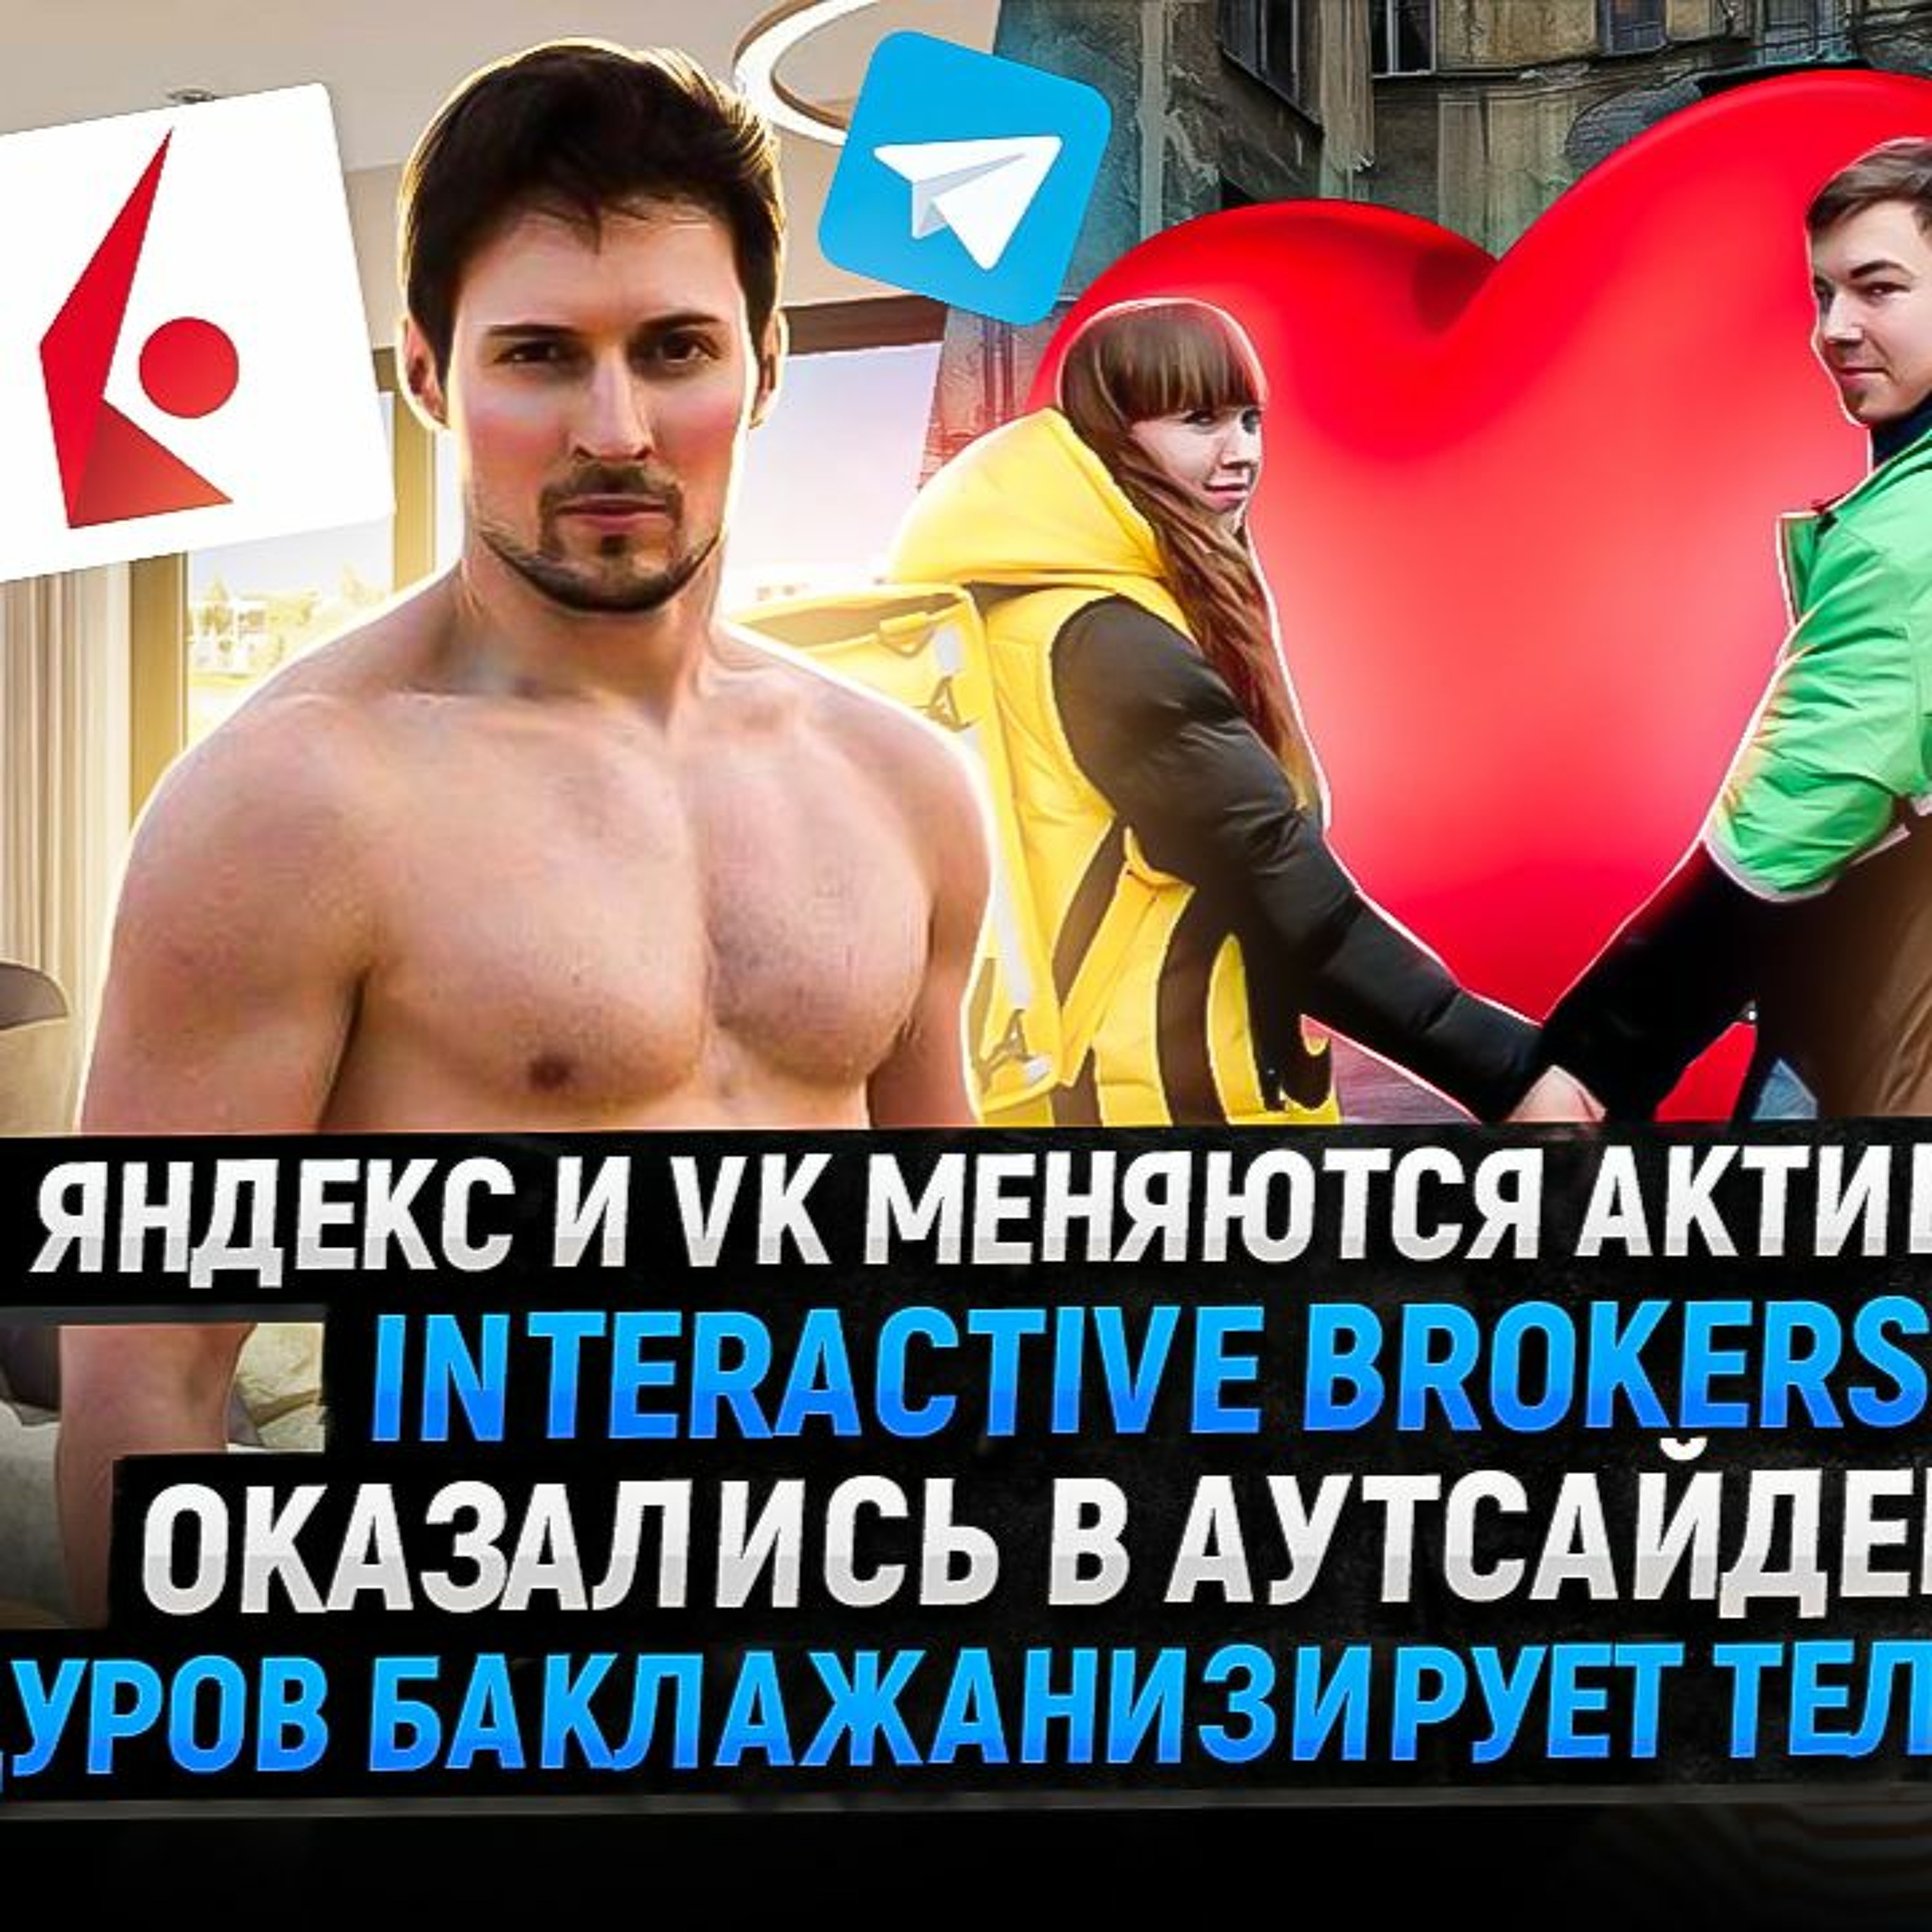 #61 - Яндекс и VK меняются активами / Дуров монетизирует ТГ / Interactive Brokers в аутсайдерах